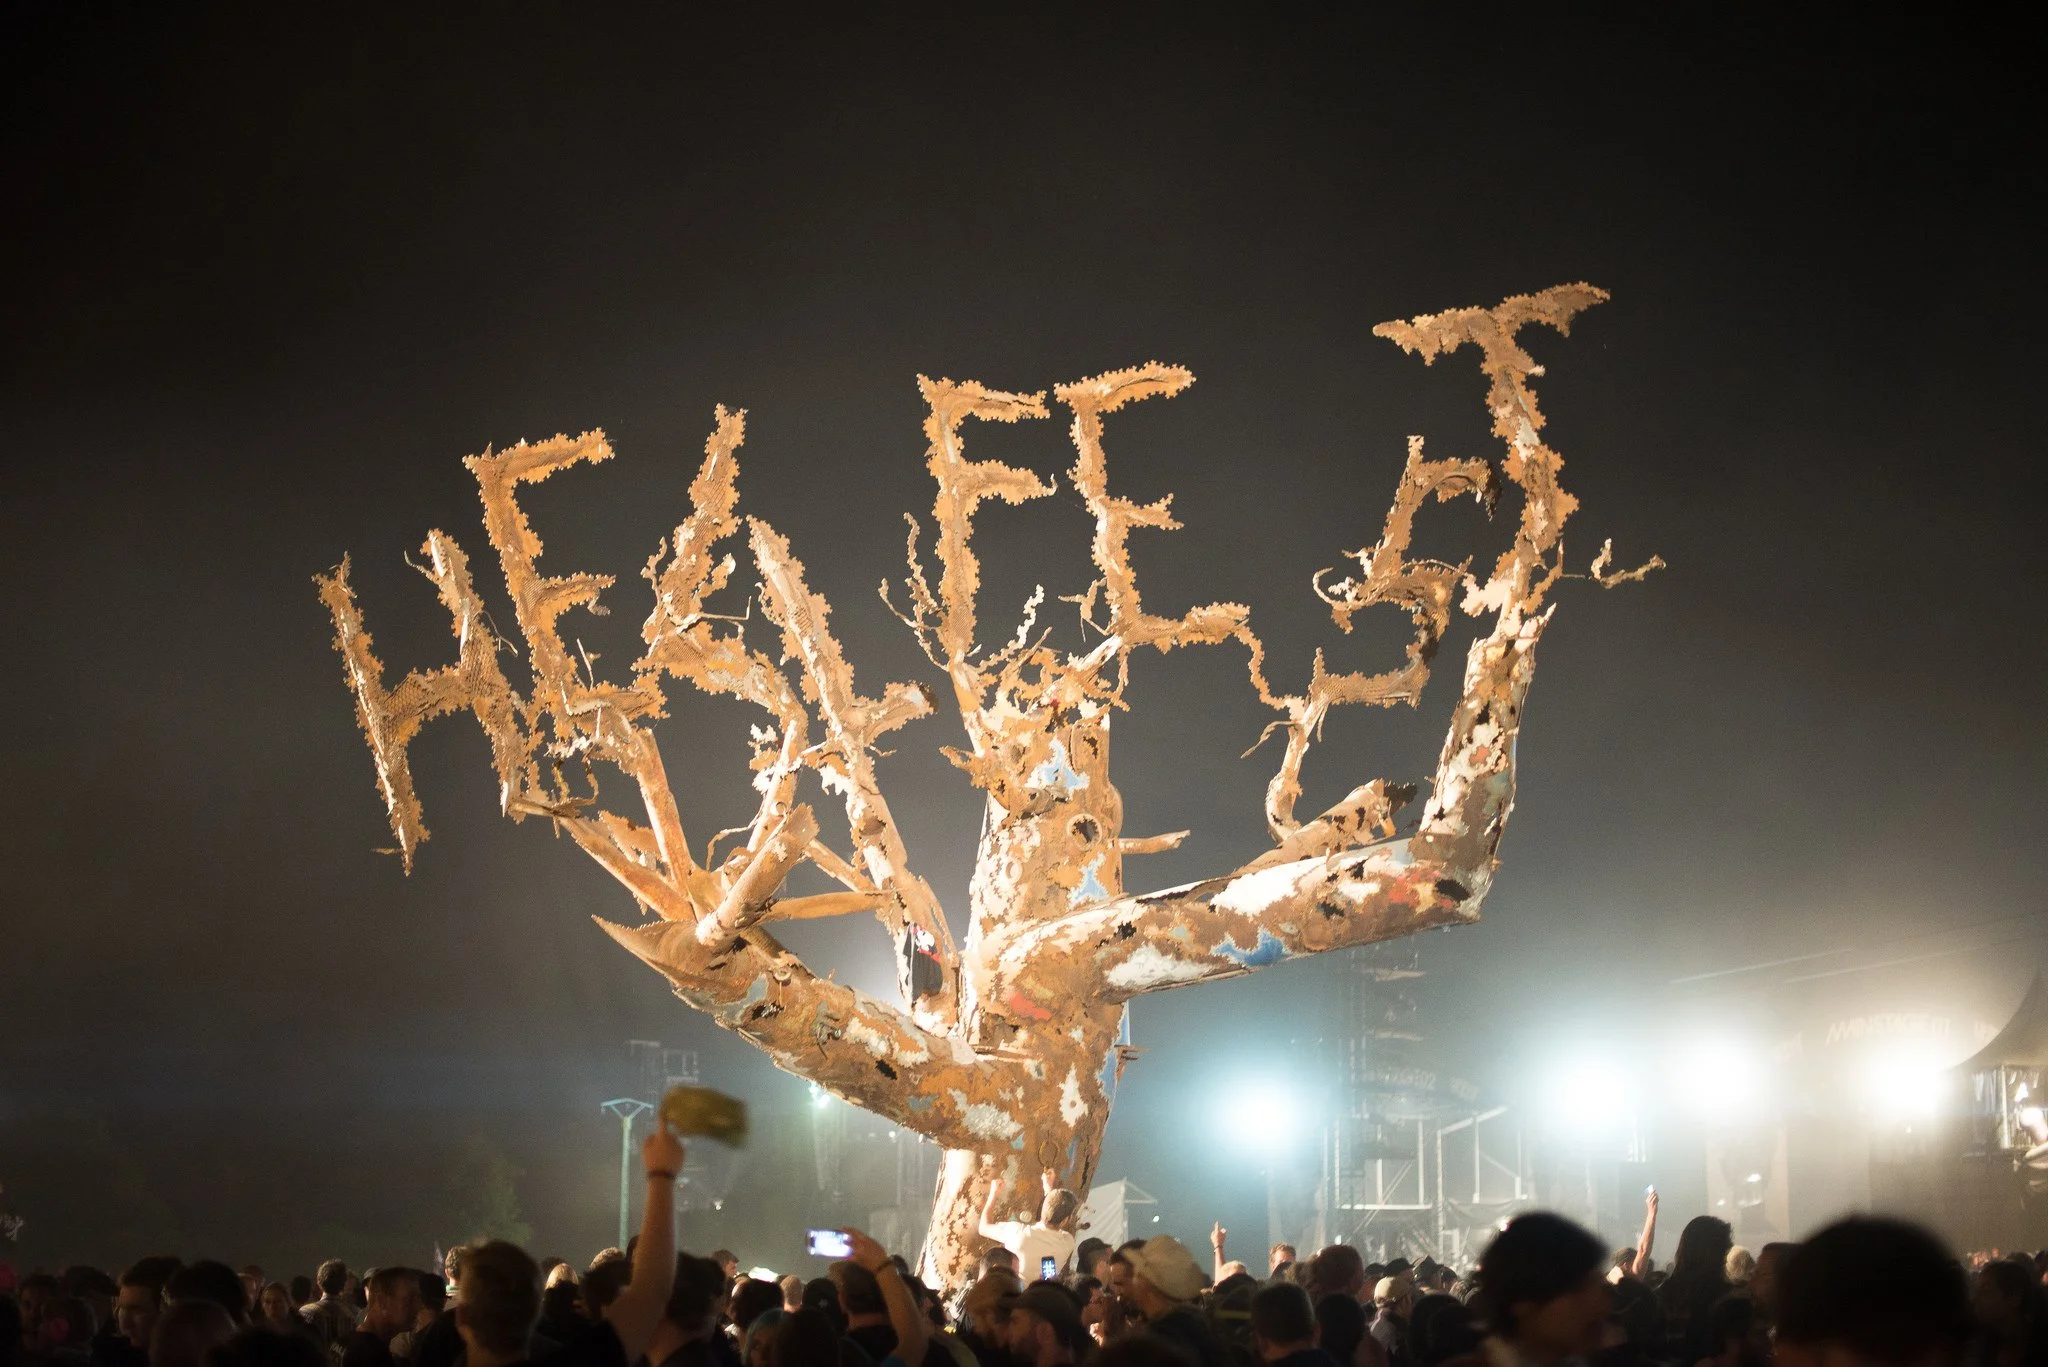 Hellfest – летний рок-фестиваль, проходящий под открытым небом недалеко от французского города Клиссон. В нем принимает участие более сотни групп, причем количество сцен, выступлений и посетителей растет с каждым годом. Hellfest 2014 длился три дня, на нем выступило 158 команд, а ежедневное количество слушателей перевалило за 150 тысяч человек. 